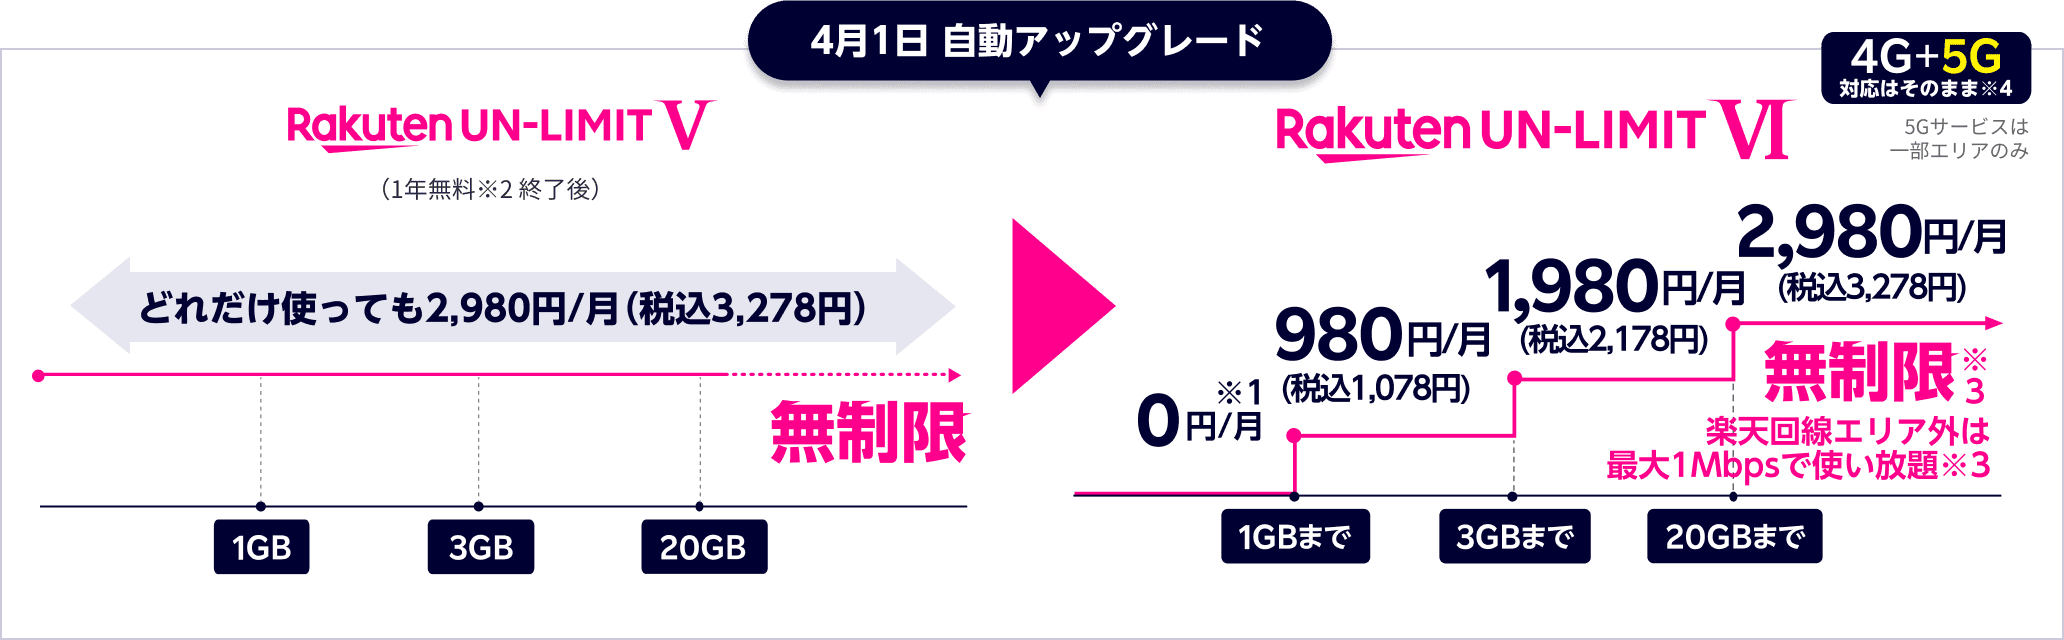 Rakuten Un Limit Vi 料金プラン 楽天モバイル